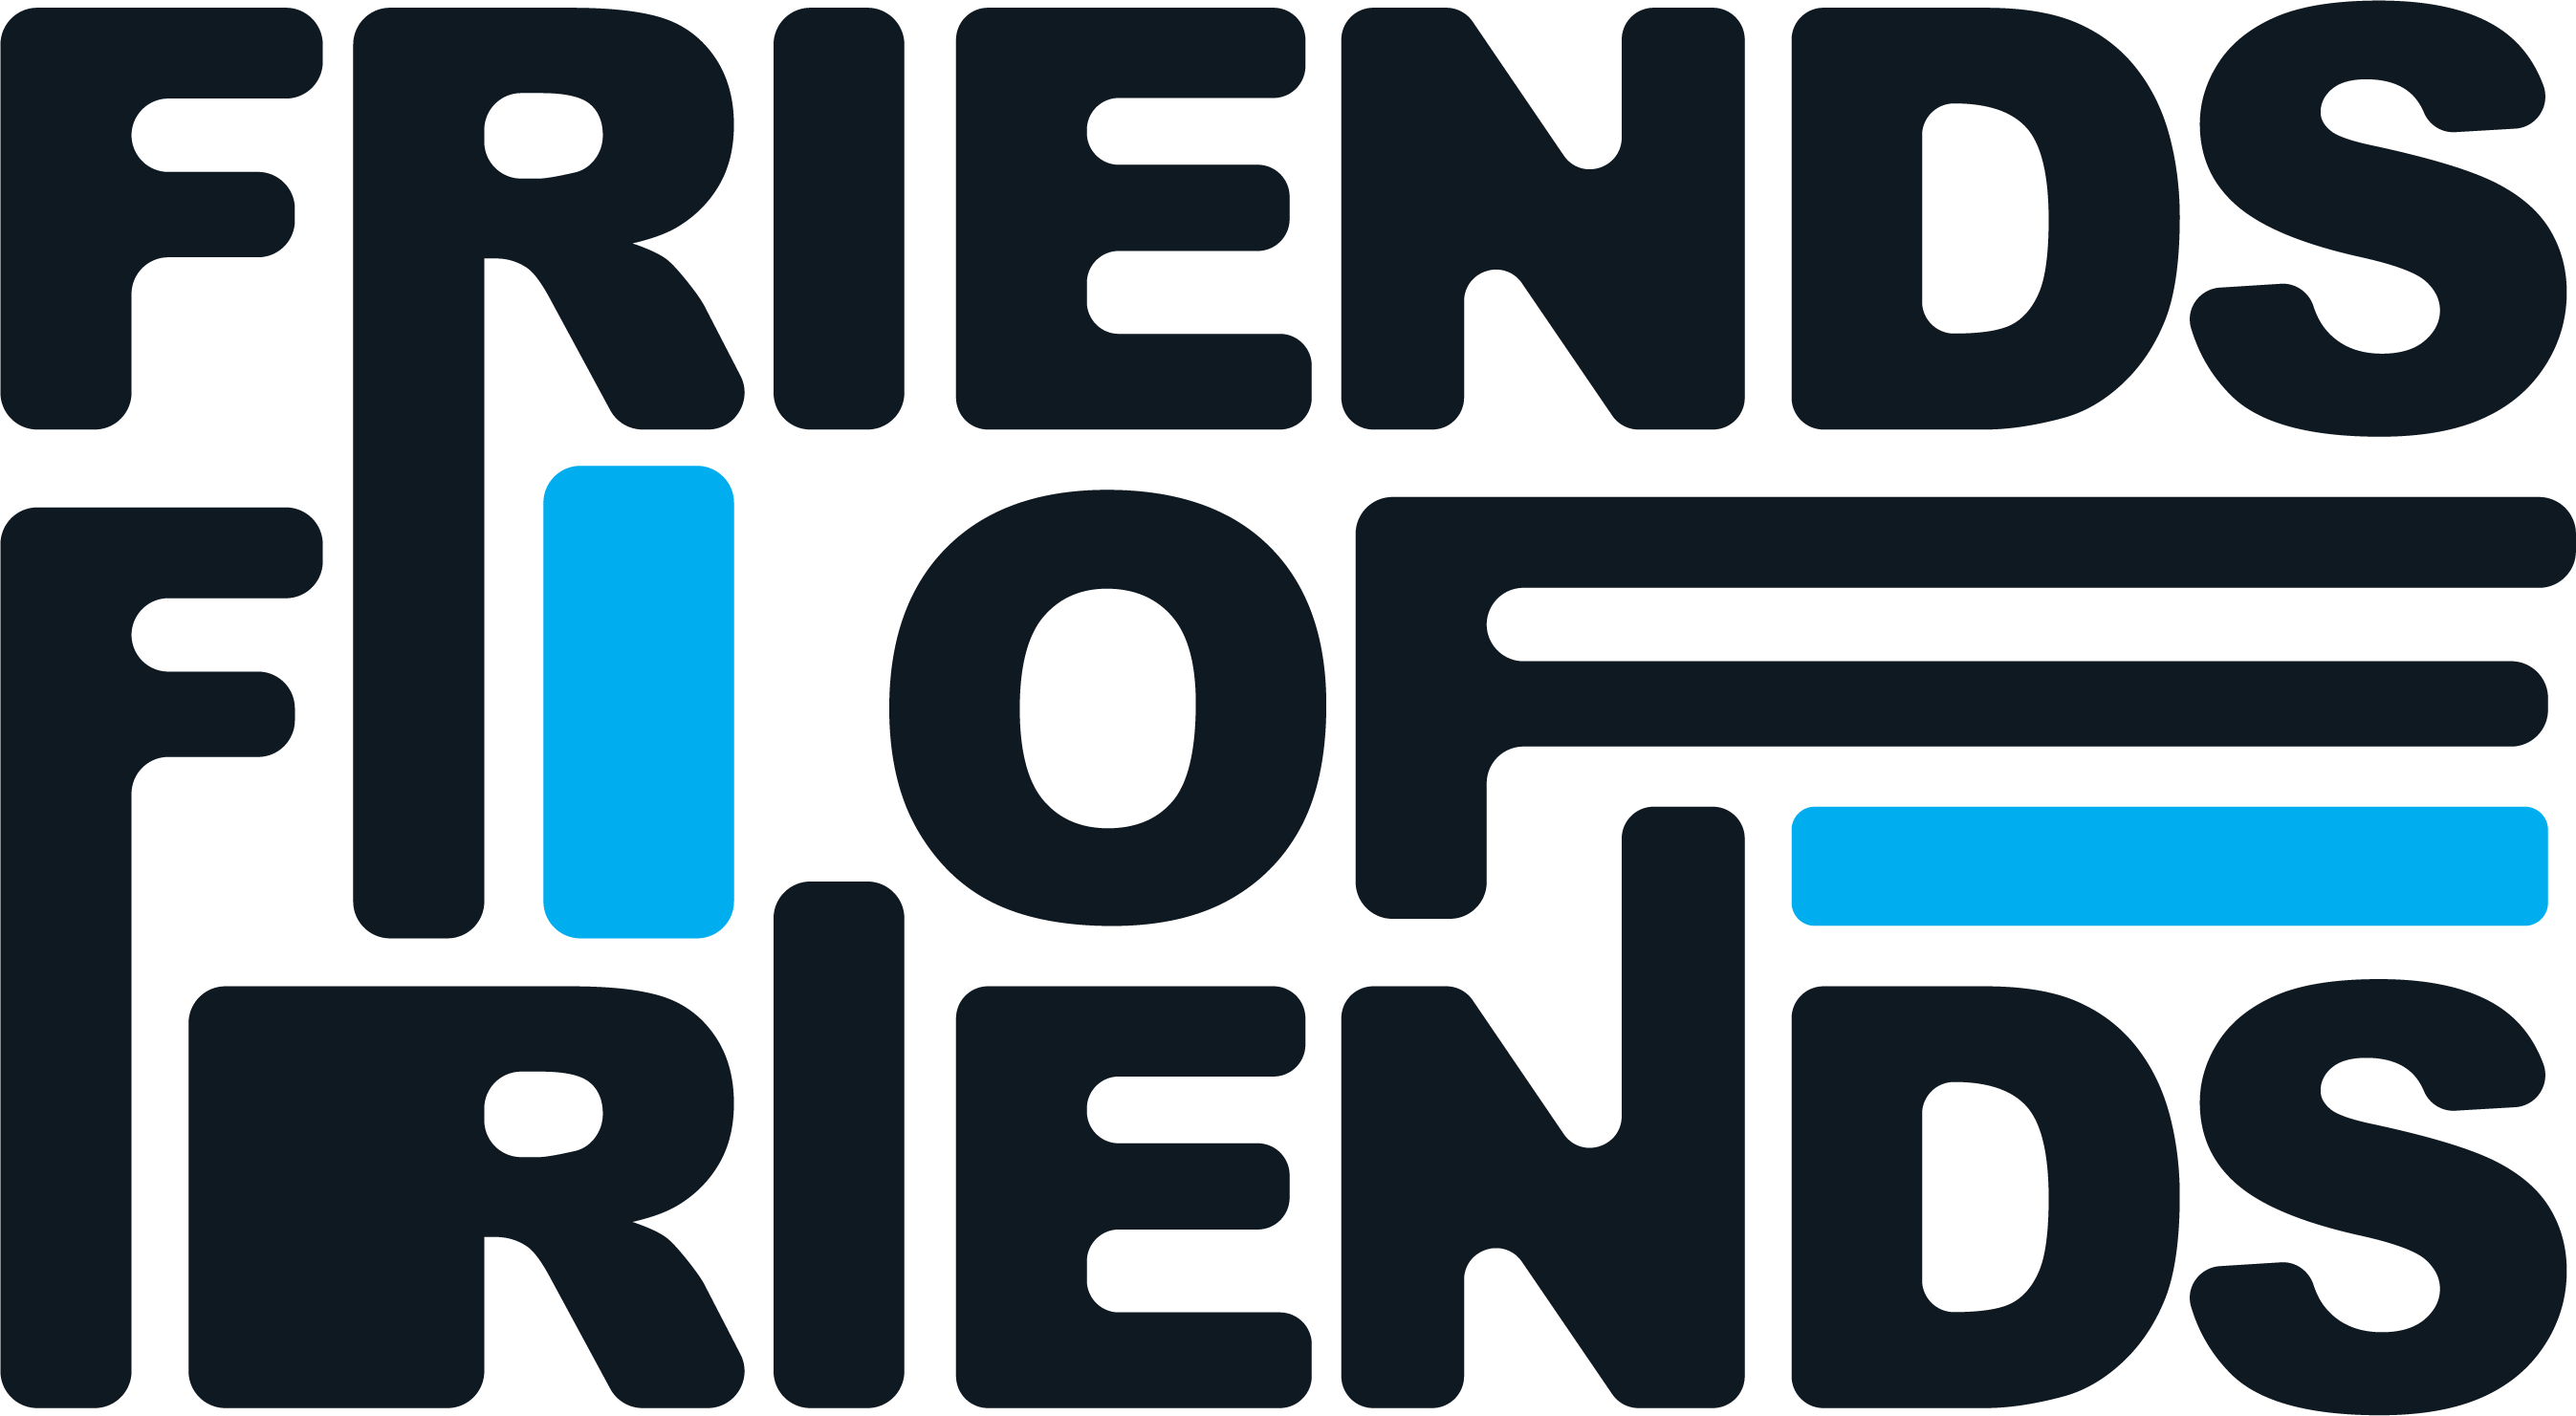 Friends of Friends • Marketing Agency